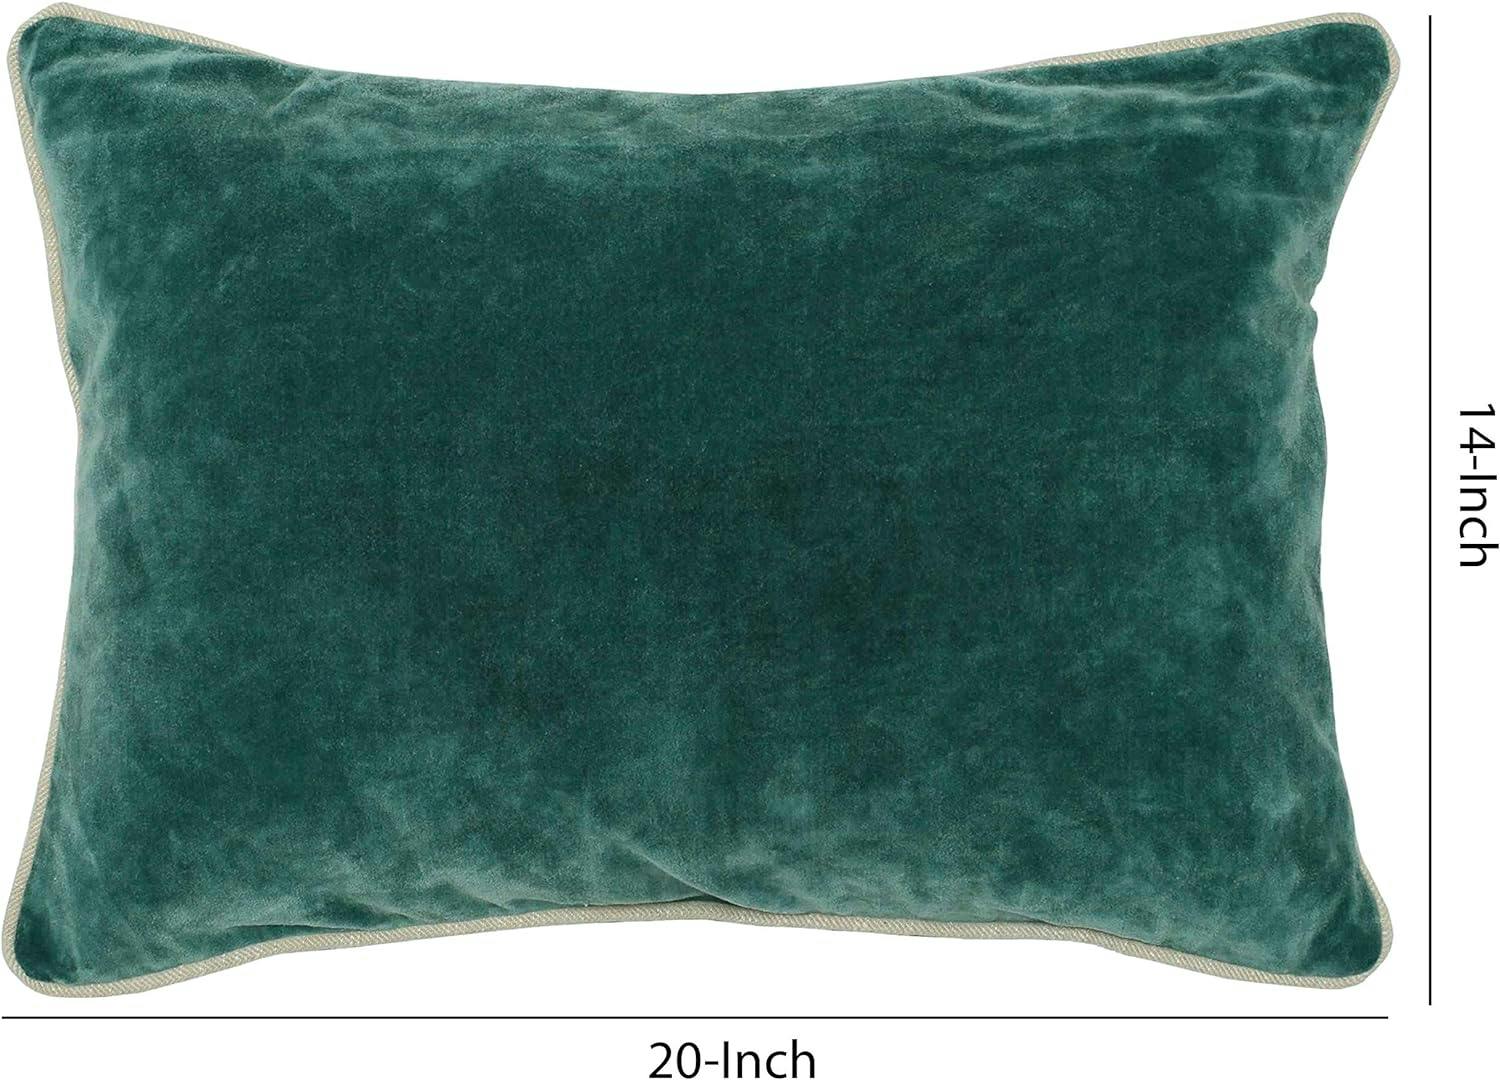 Teal Green Textured Cotton Velvet Rectangular Throw Pillow